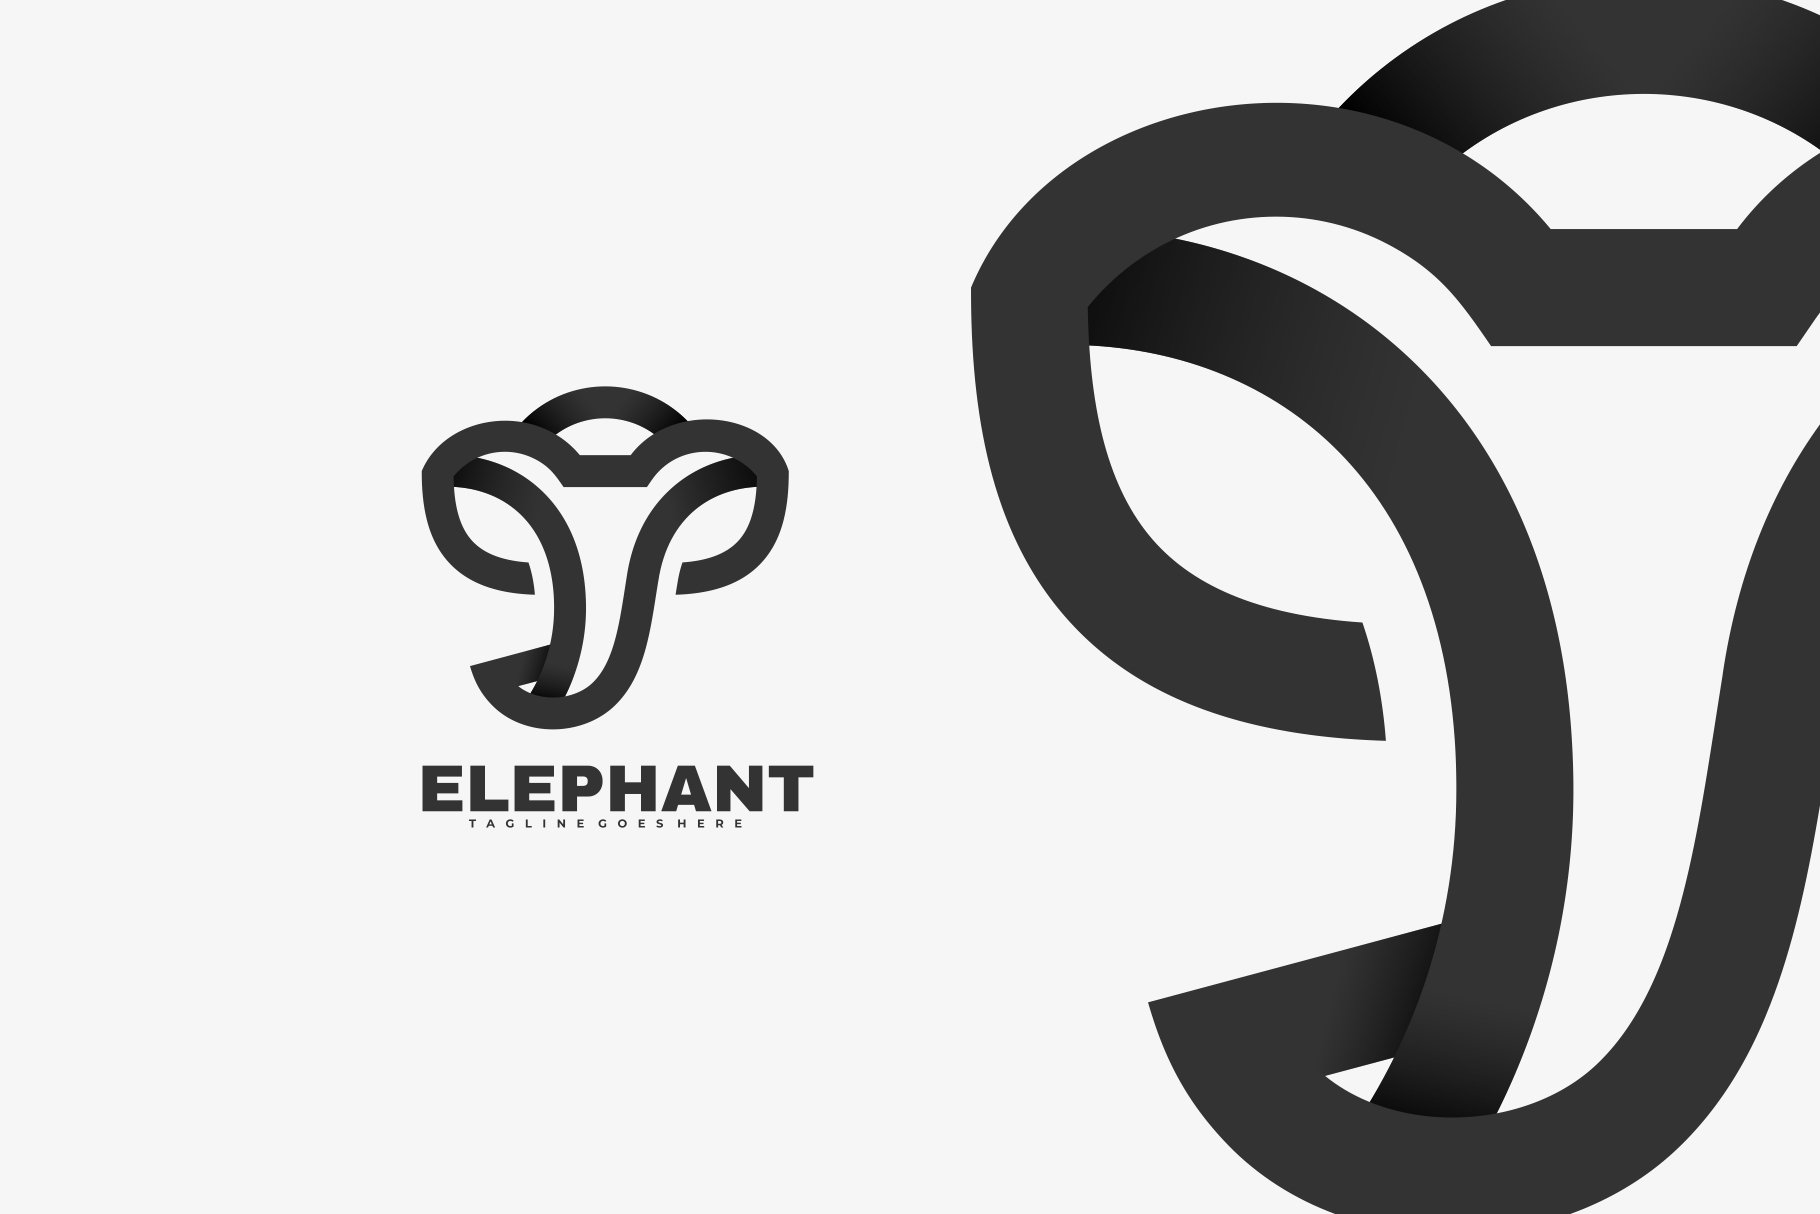 Elephant Line Art Logo cover image.